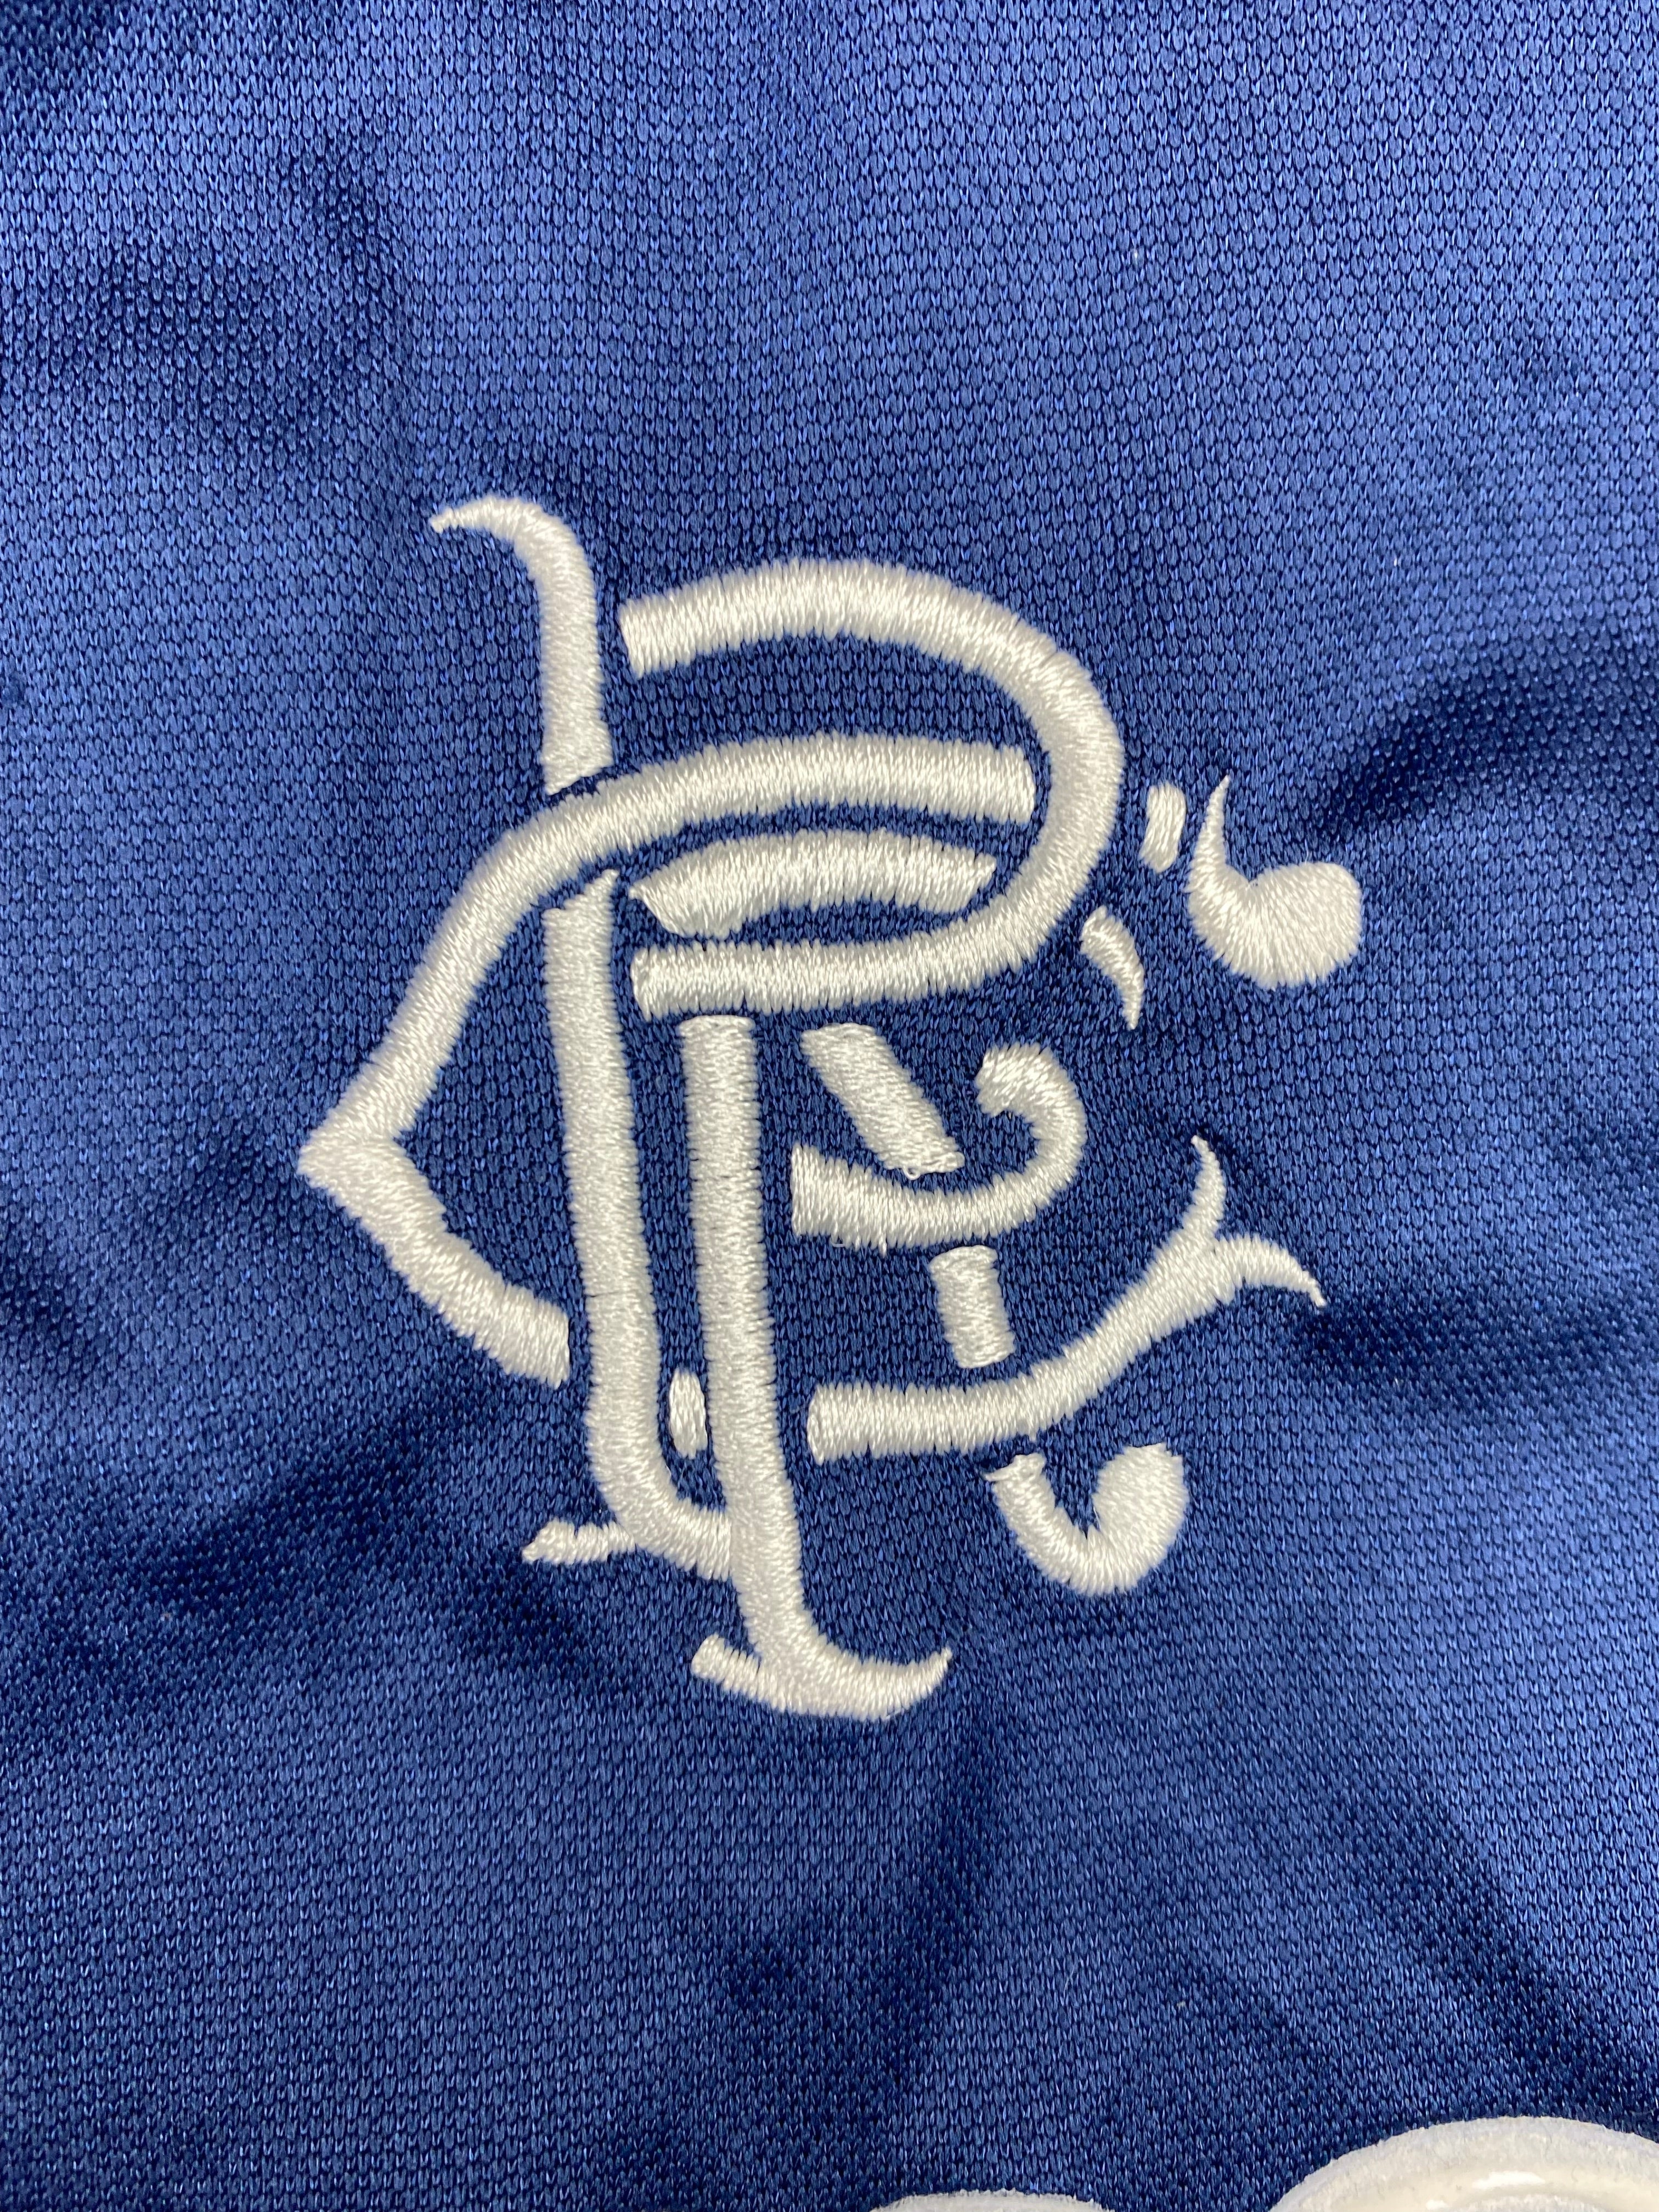 2002/03 Rangers Training Shirt (S) 7.5/10